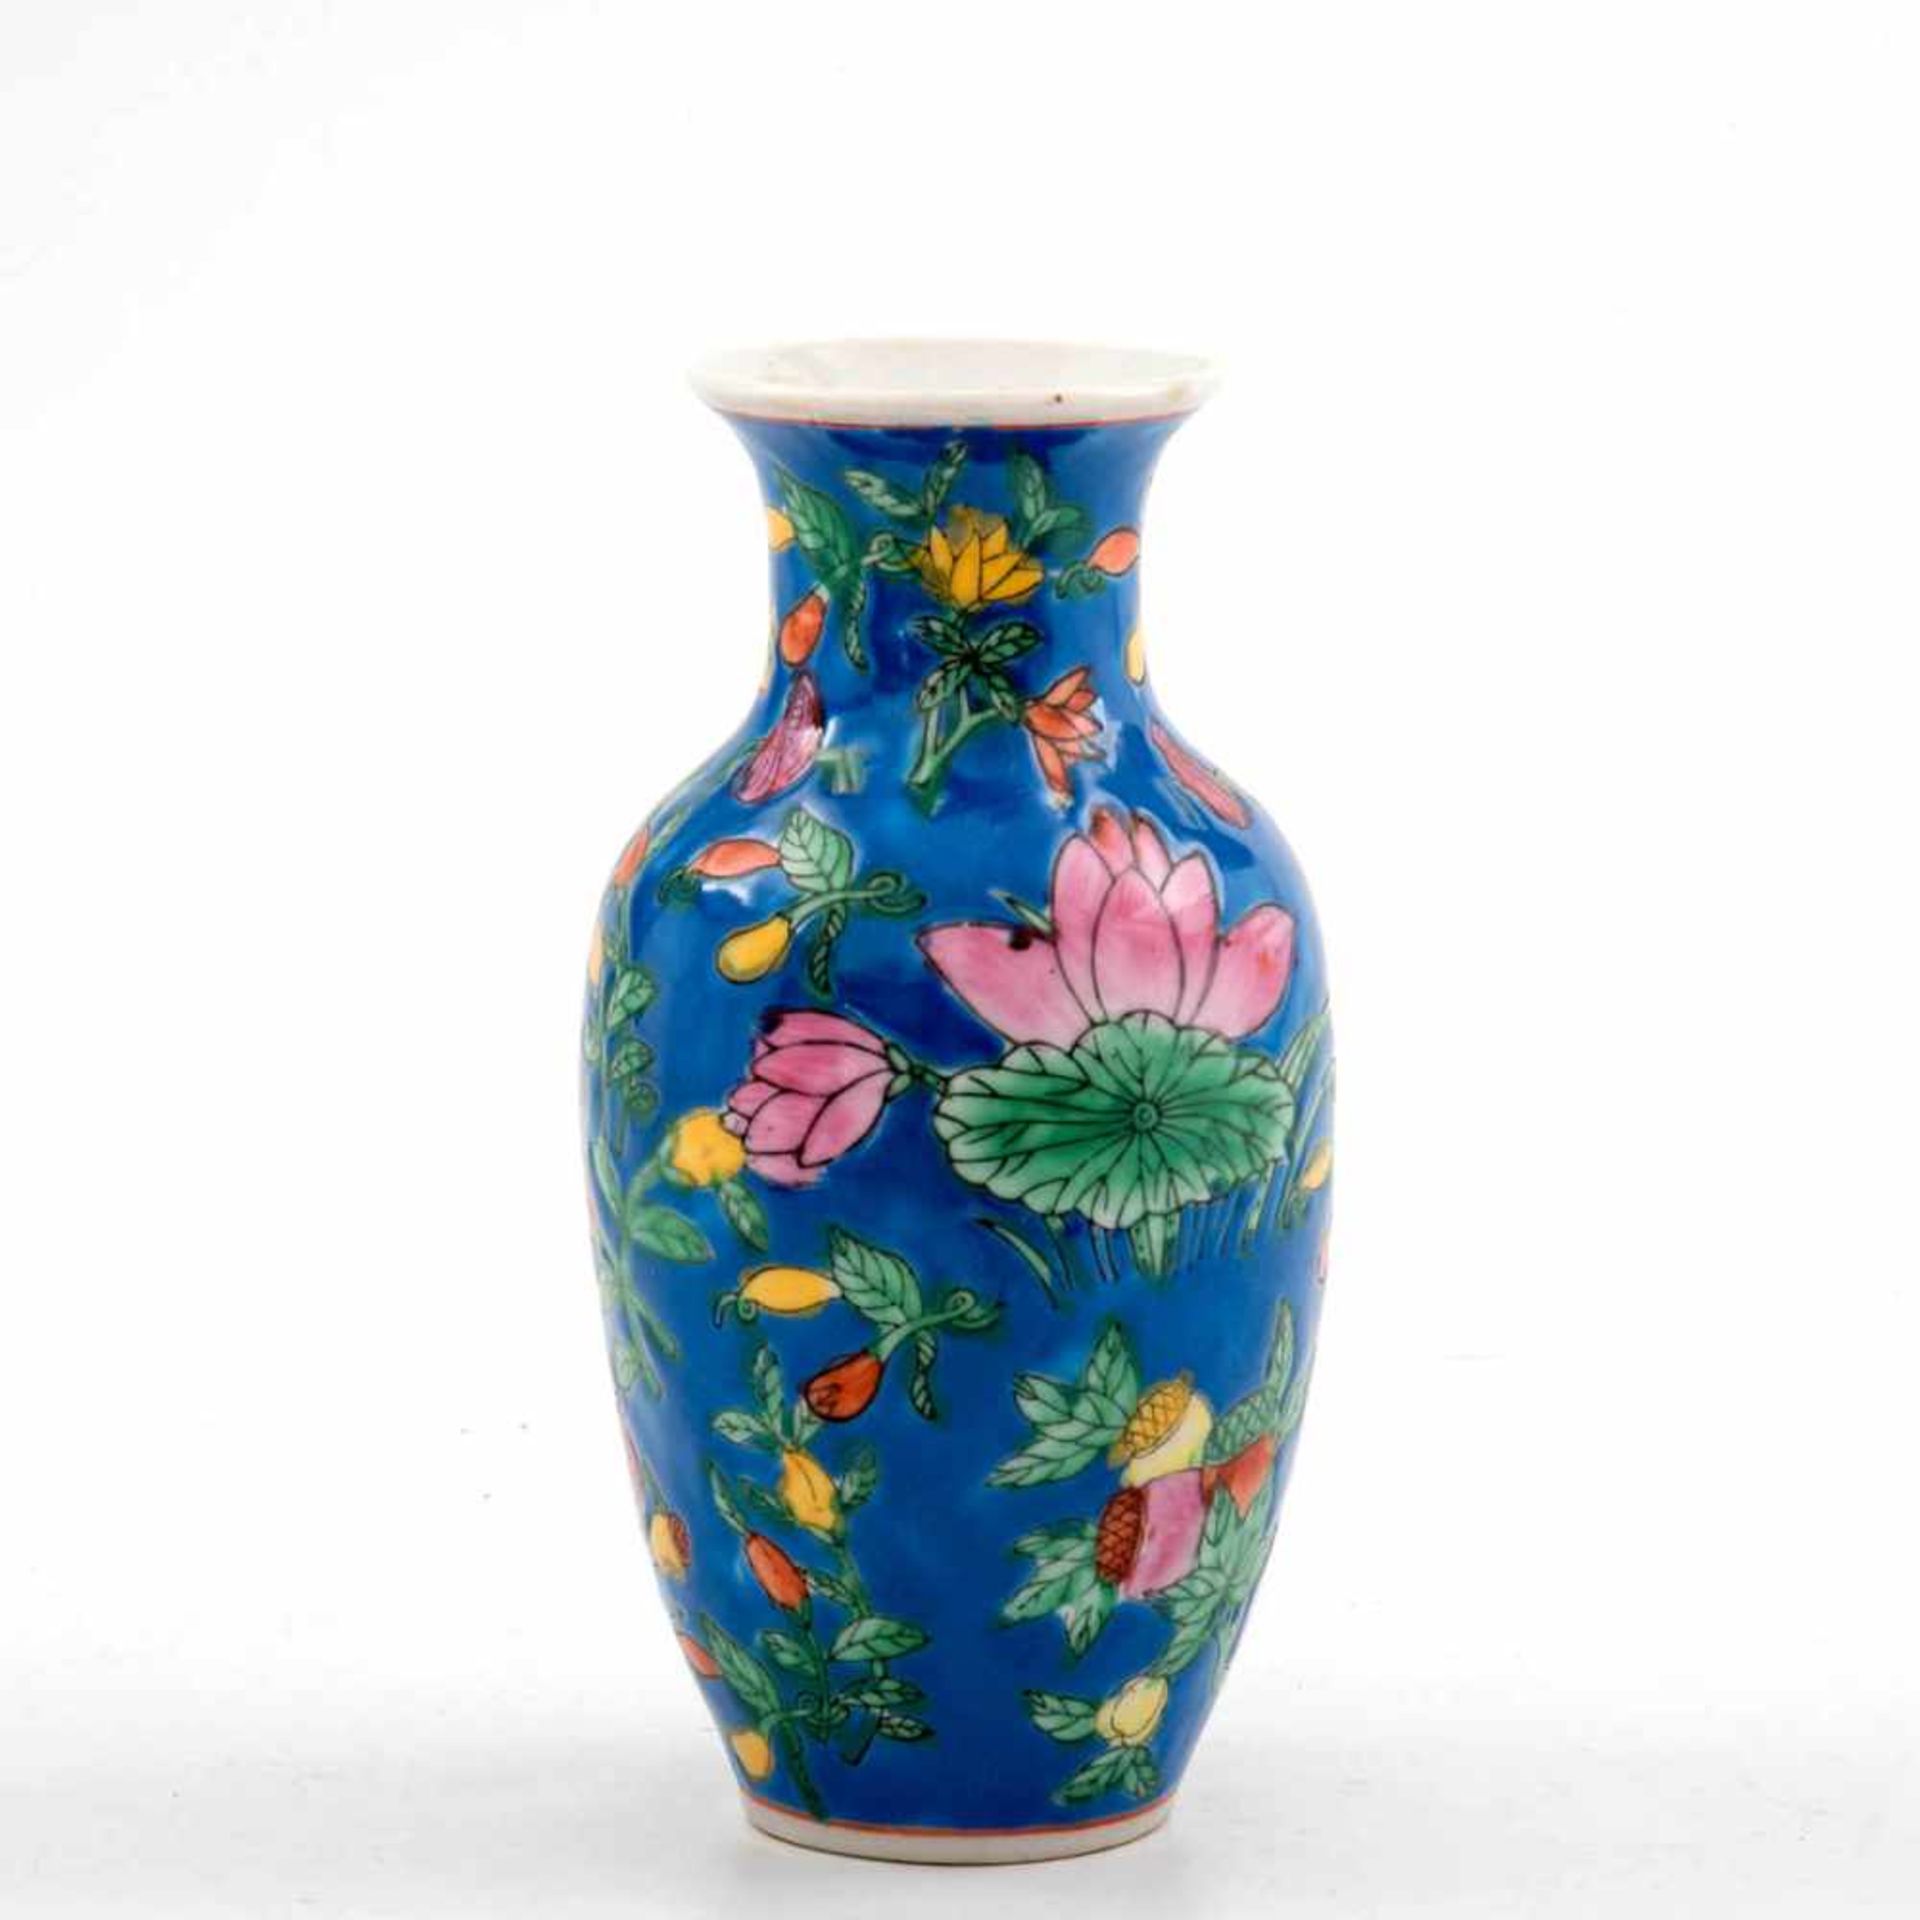 Vase, China um 1900Porzellan auf mittelblauem Fond polychrom mit Früchten und Blüten bemalt. Unter